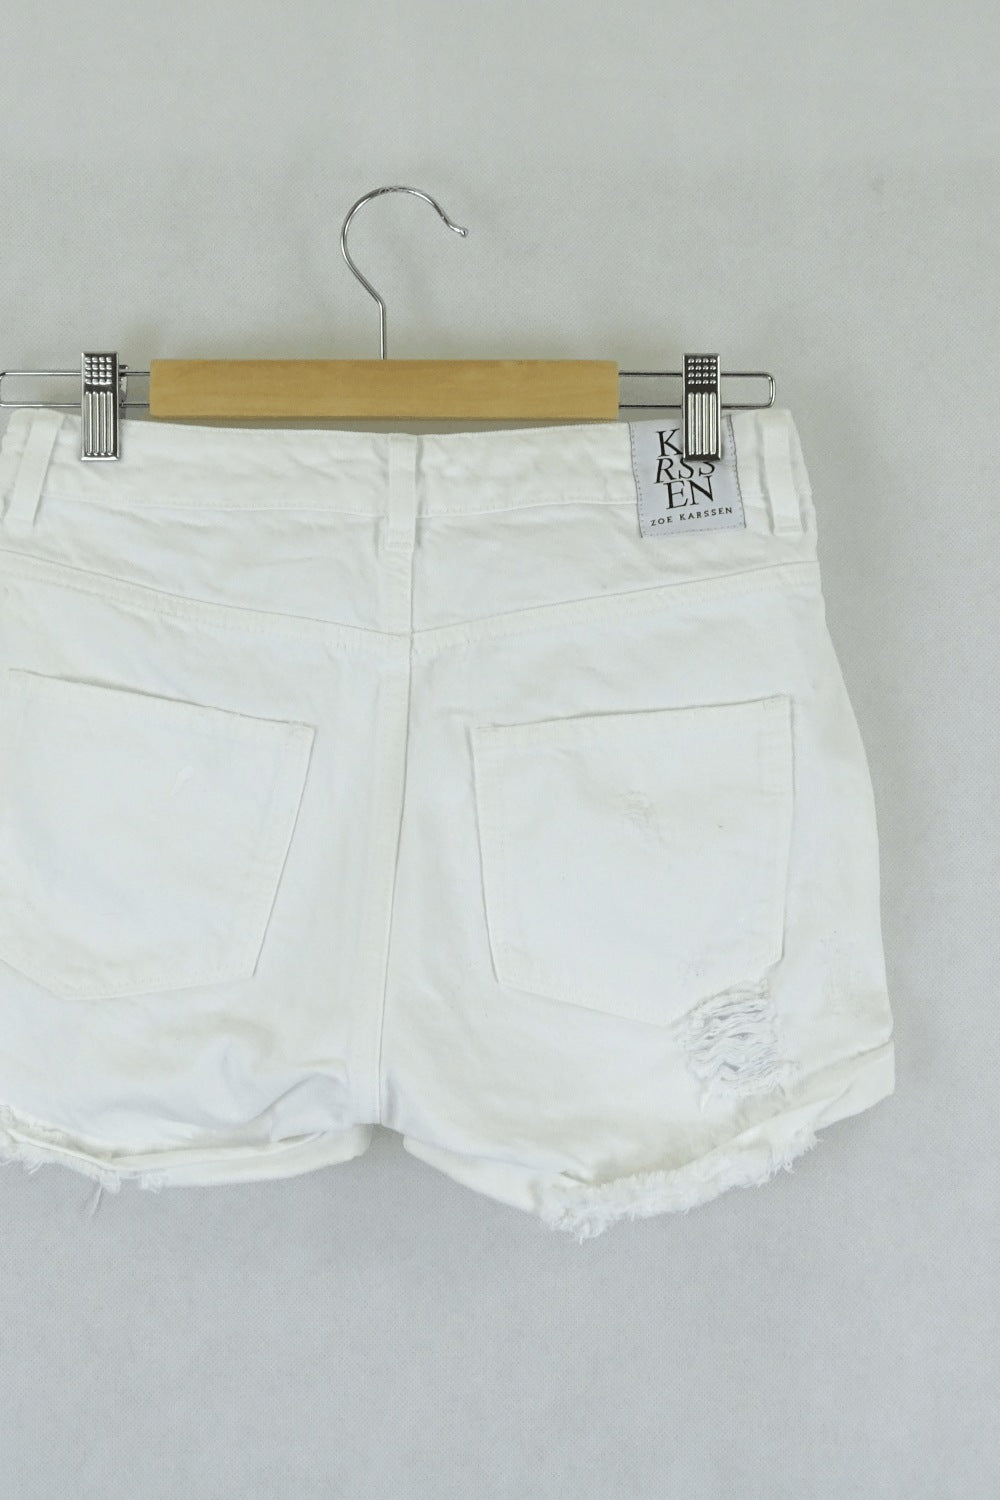 Zoe Karssen white shorts 6